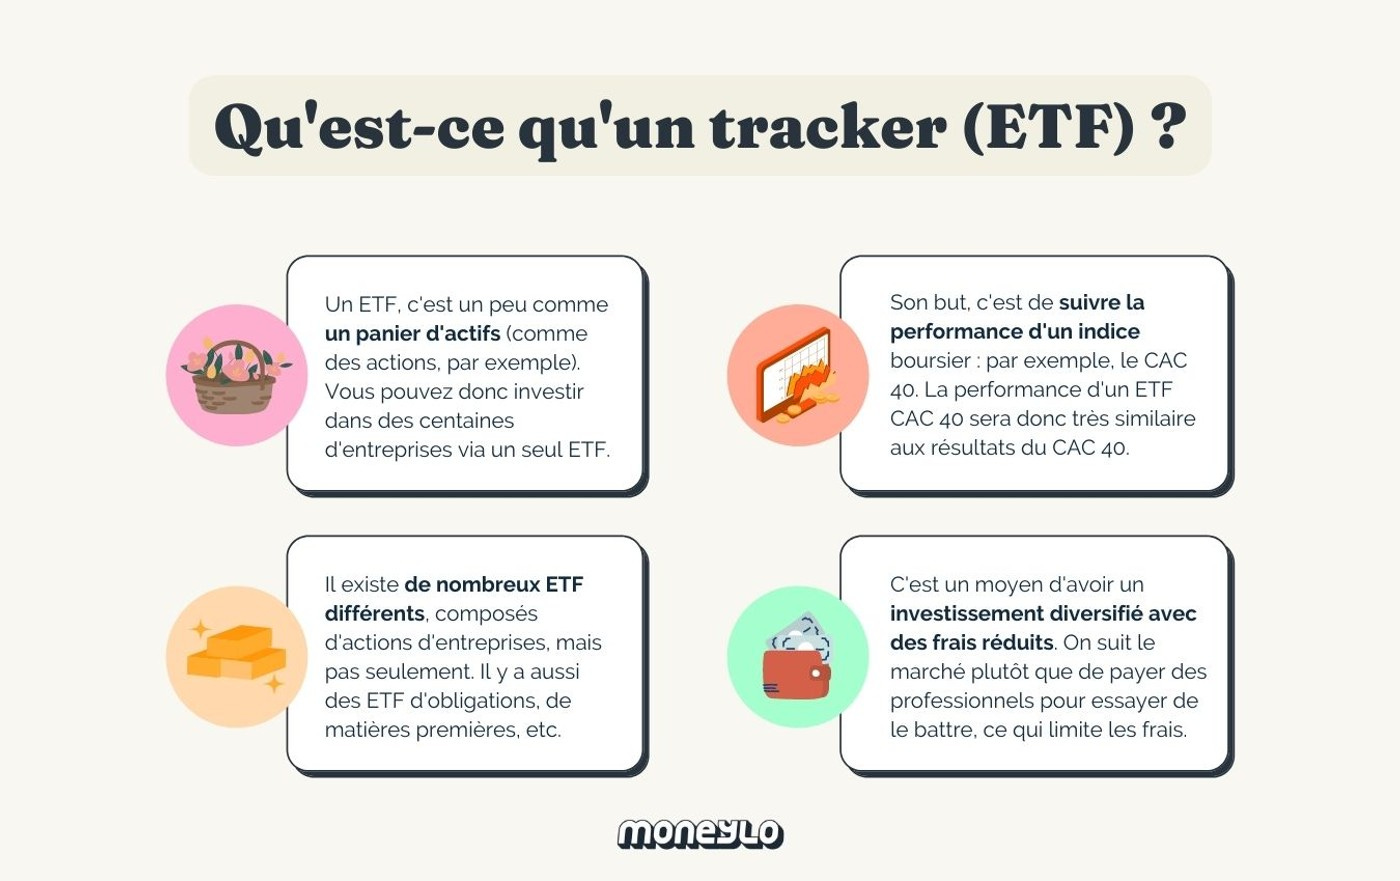 Tout savoir sur les ETF & trackers : le guide complet | Moneylo